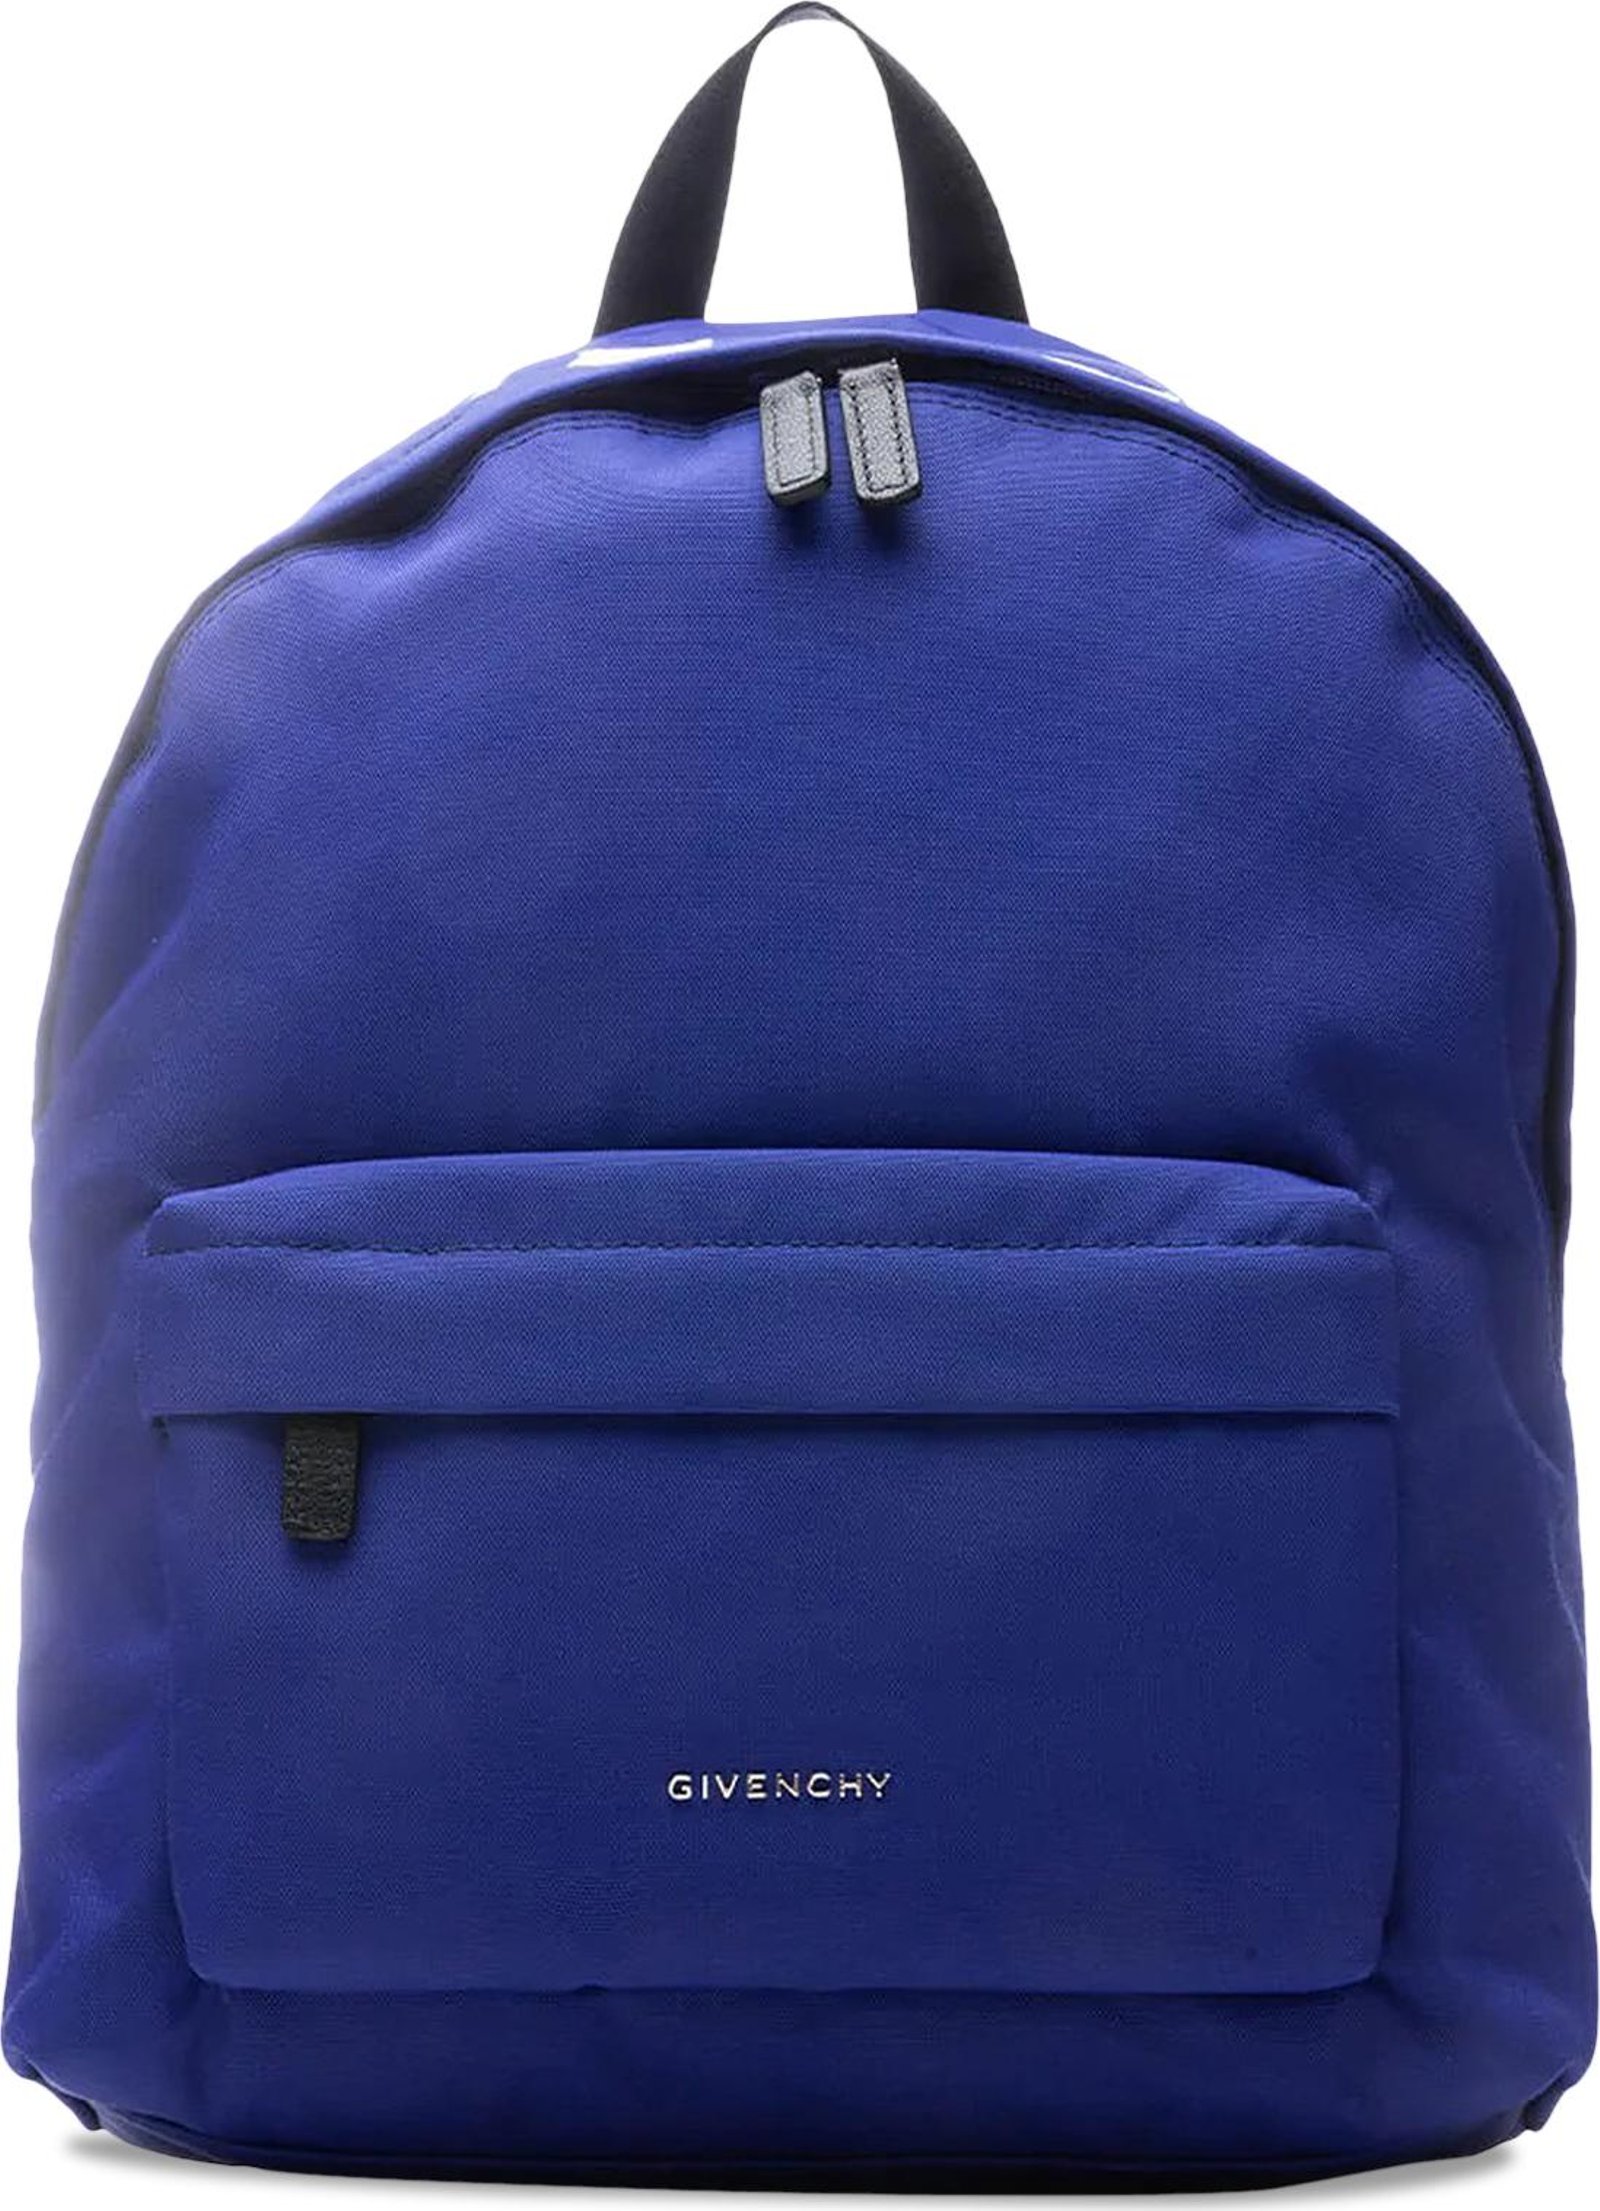 Buy Givenchy Essential U Backpack 'Ocean Blue' - BK508HK1F5 426 | GOAT AU